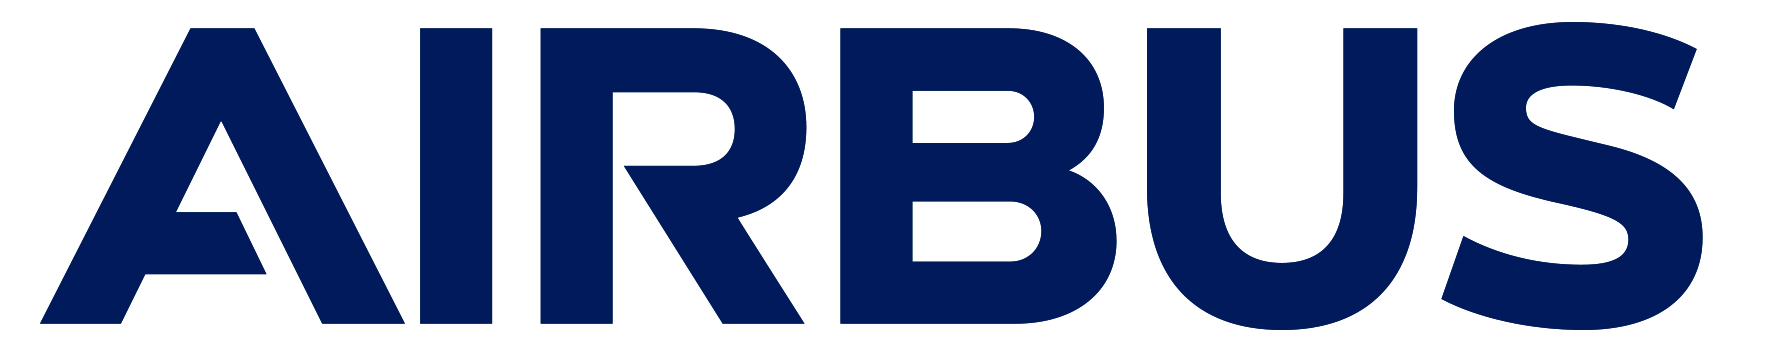 Airbus Group – Logos Downlo